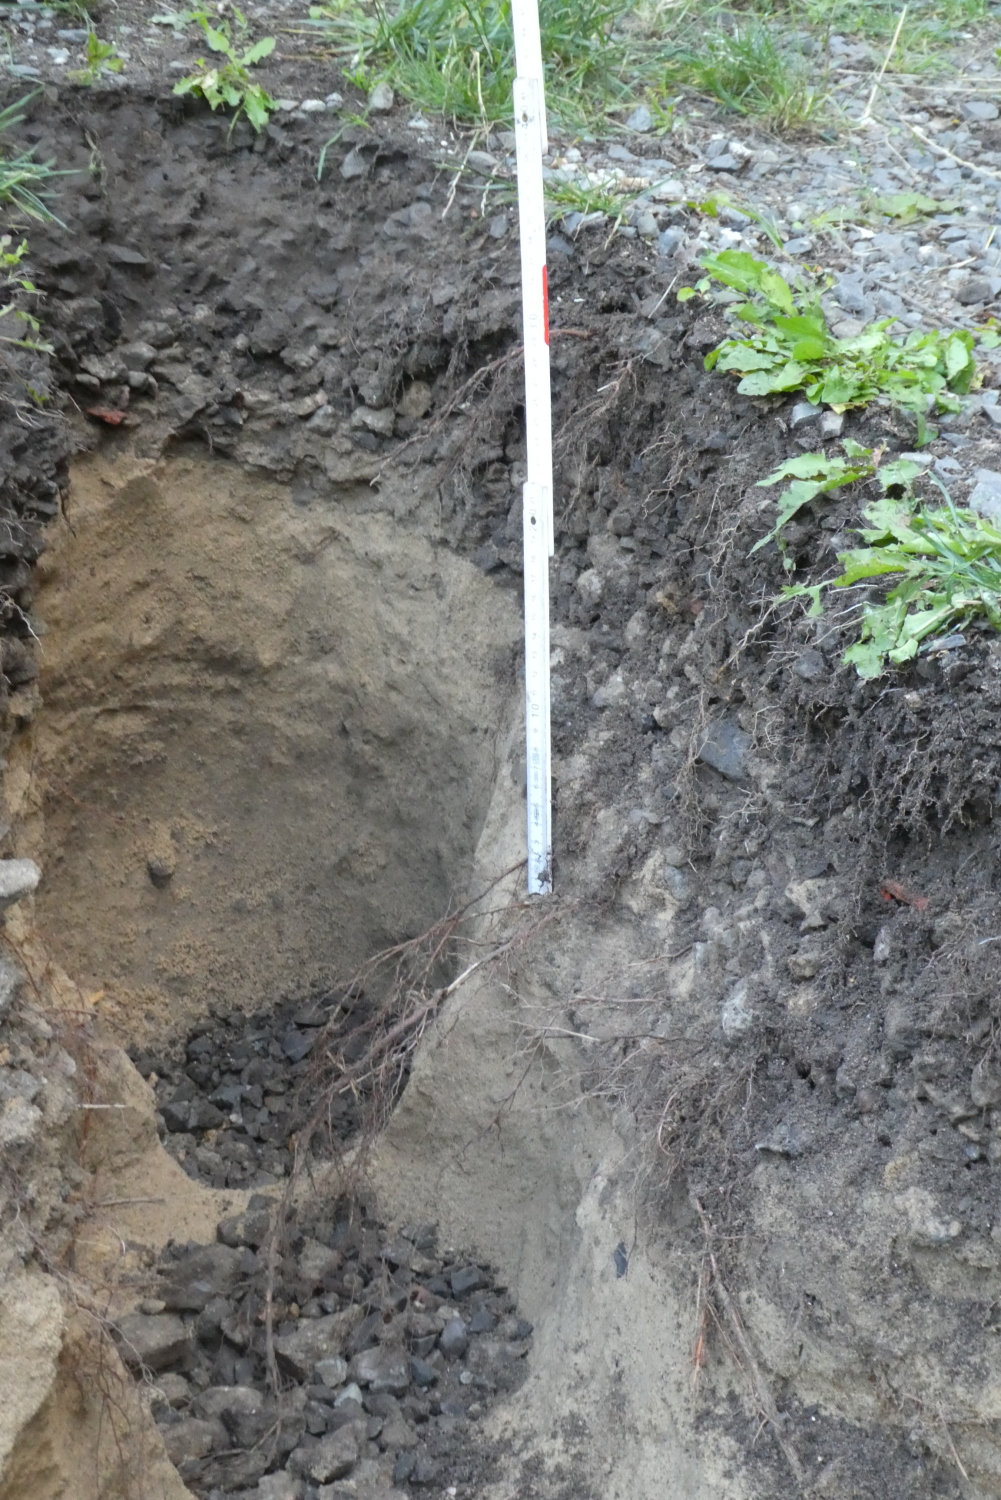 Abb. 7: Pflanzstreifen, ca. 20 cm dicke Substratschicht, darunterliegender Sandboden kaum erschlossen